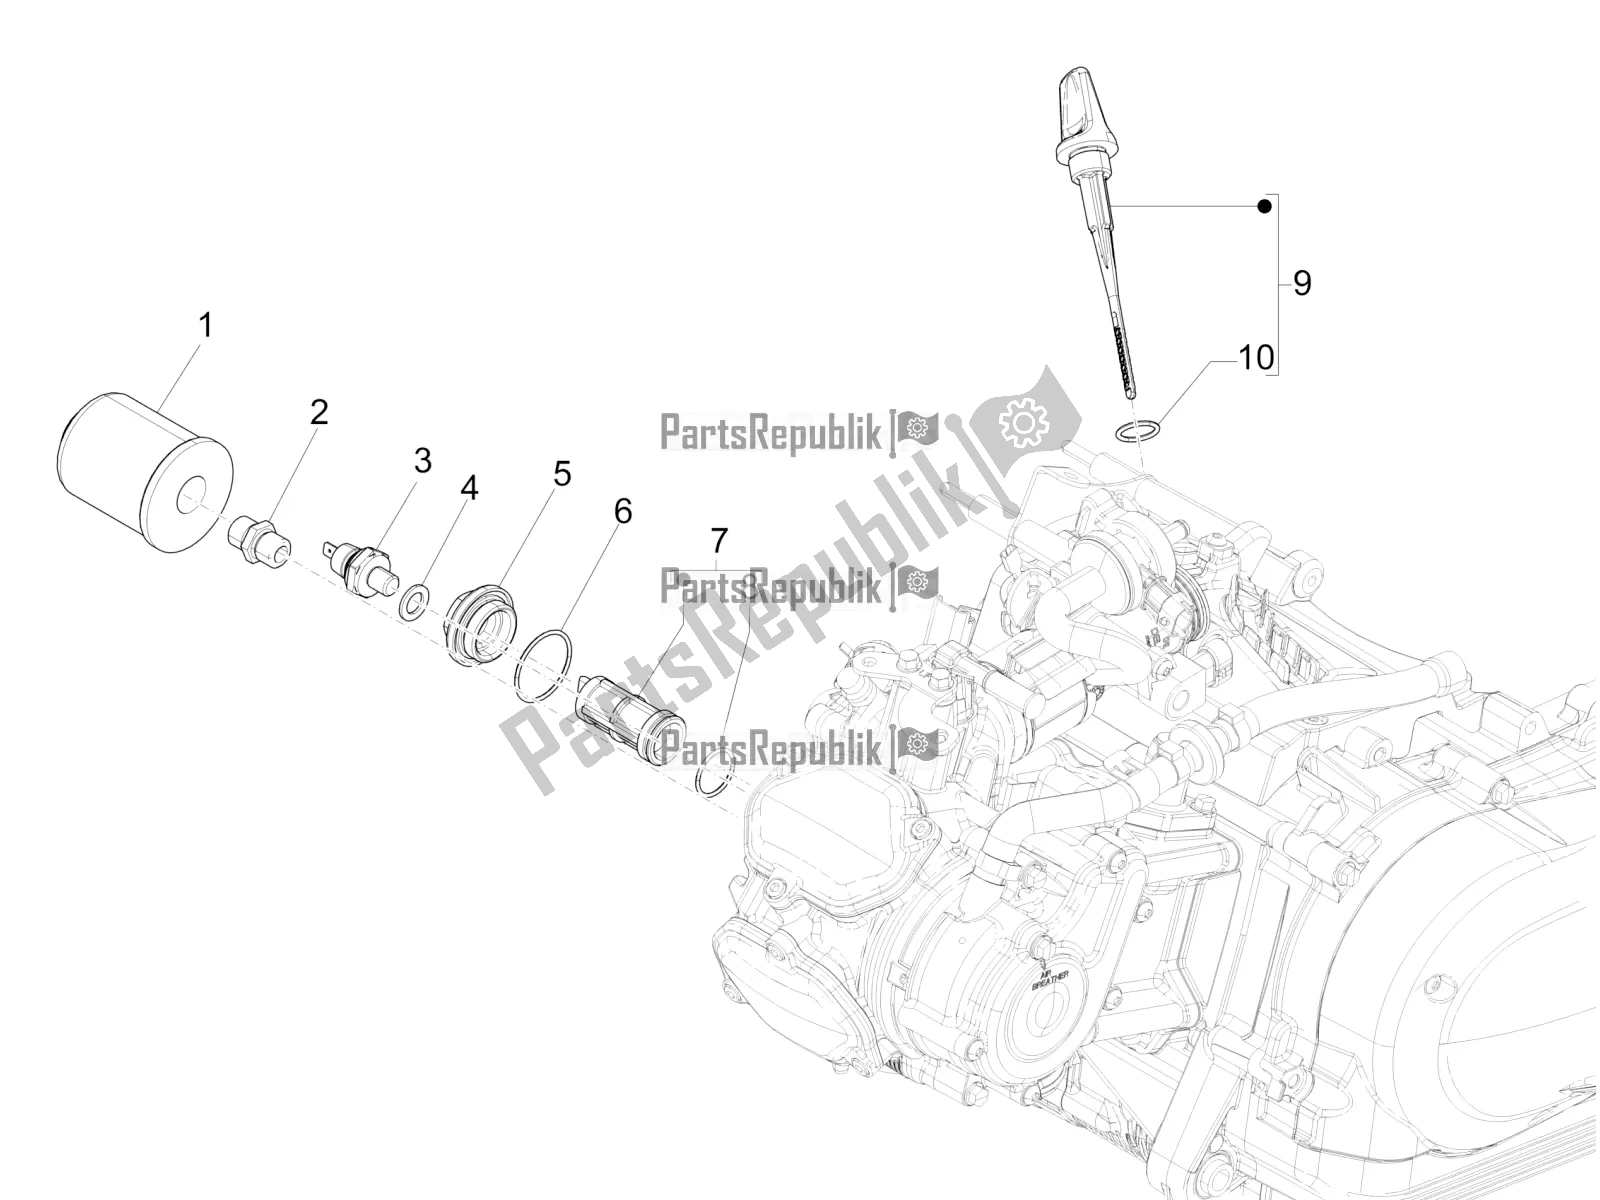 Toutes les pièces pour le Couvercle Magnéto Volant - Filtre à Huile du Vespa GTS 125 Super ABS 2021